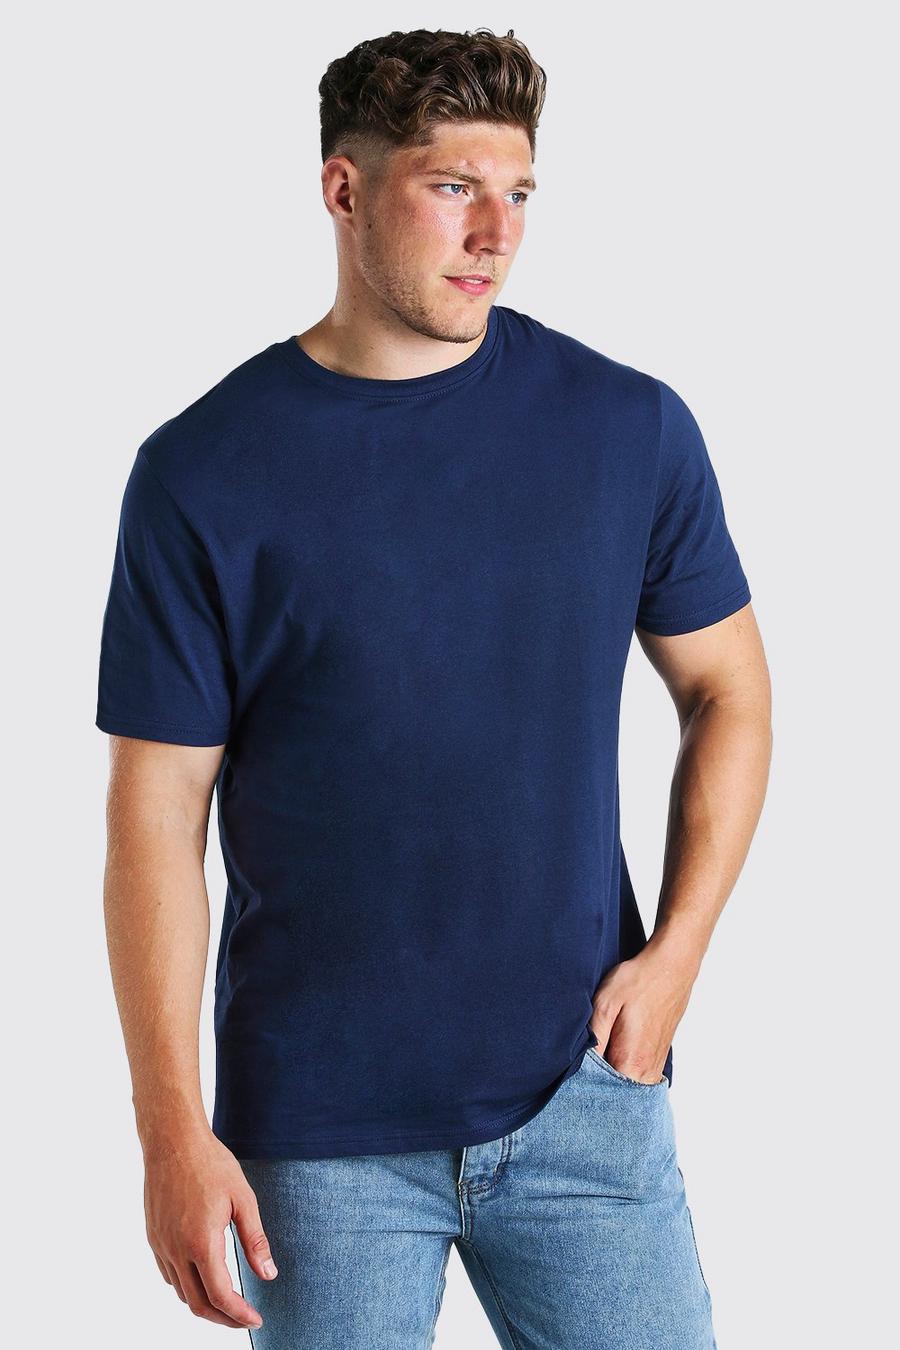 Navy marineblau Plus Size Longline Basic T-Shirt